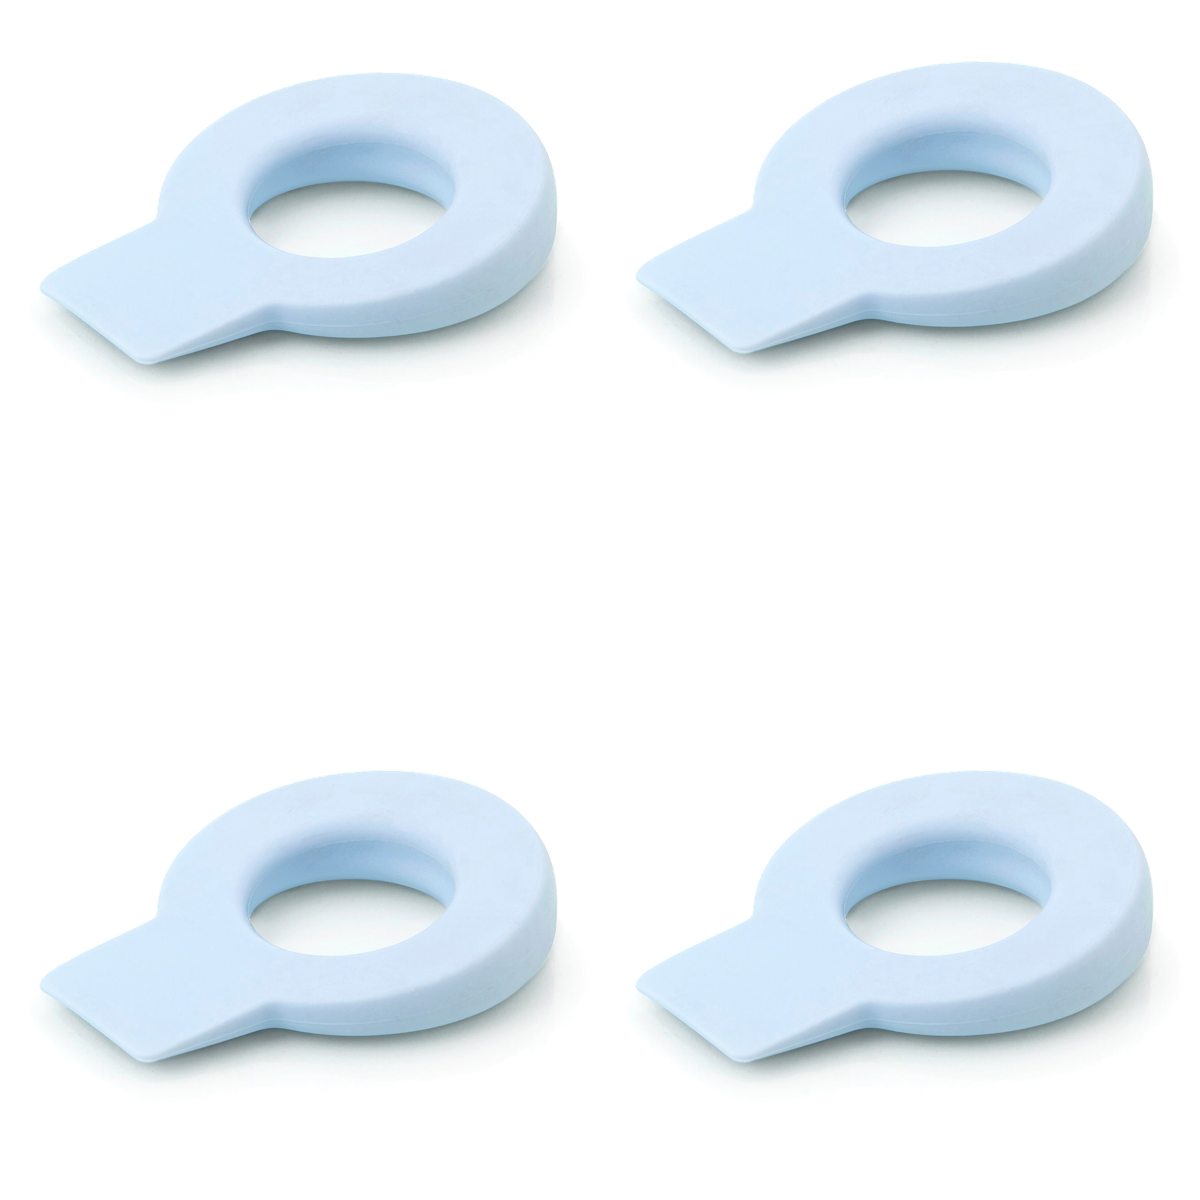 4 cuñas retenedores circulares de plástico flexible acabado en azul celeste para puertas